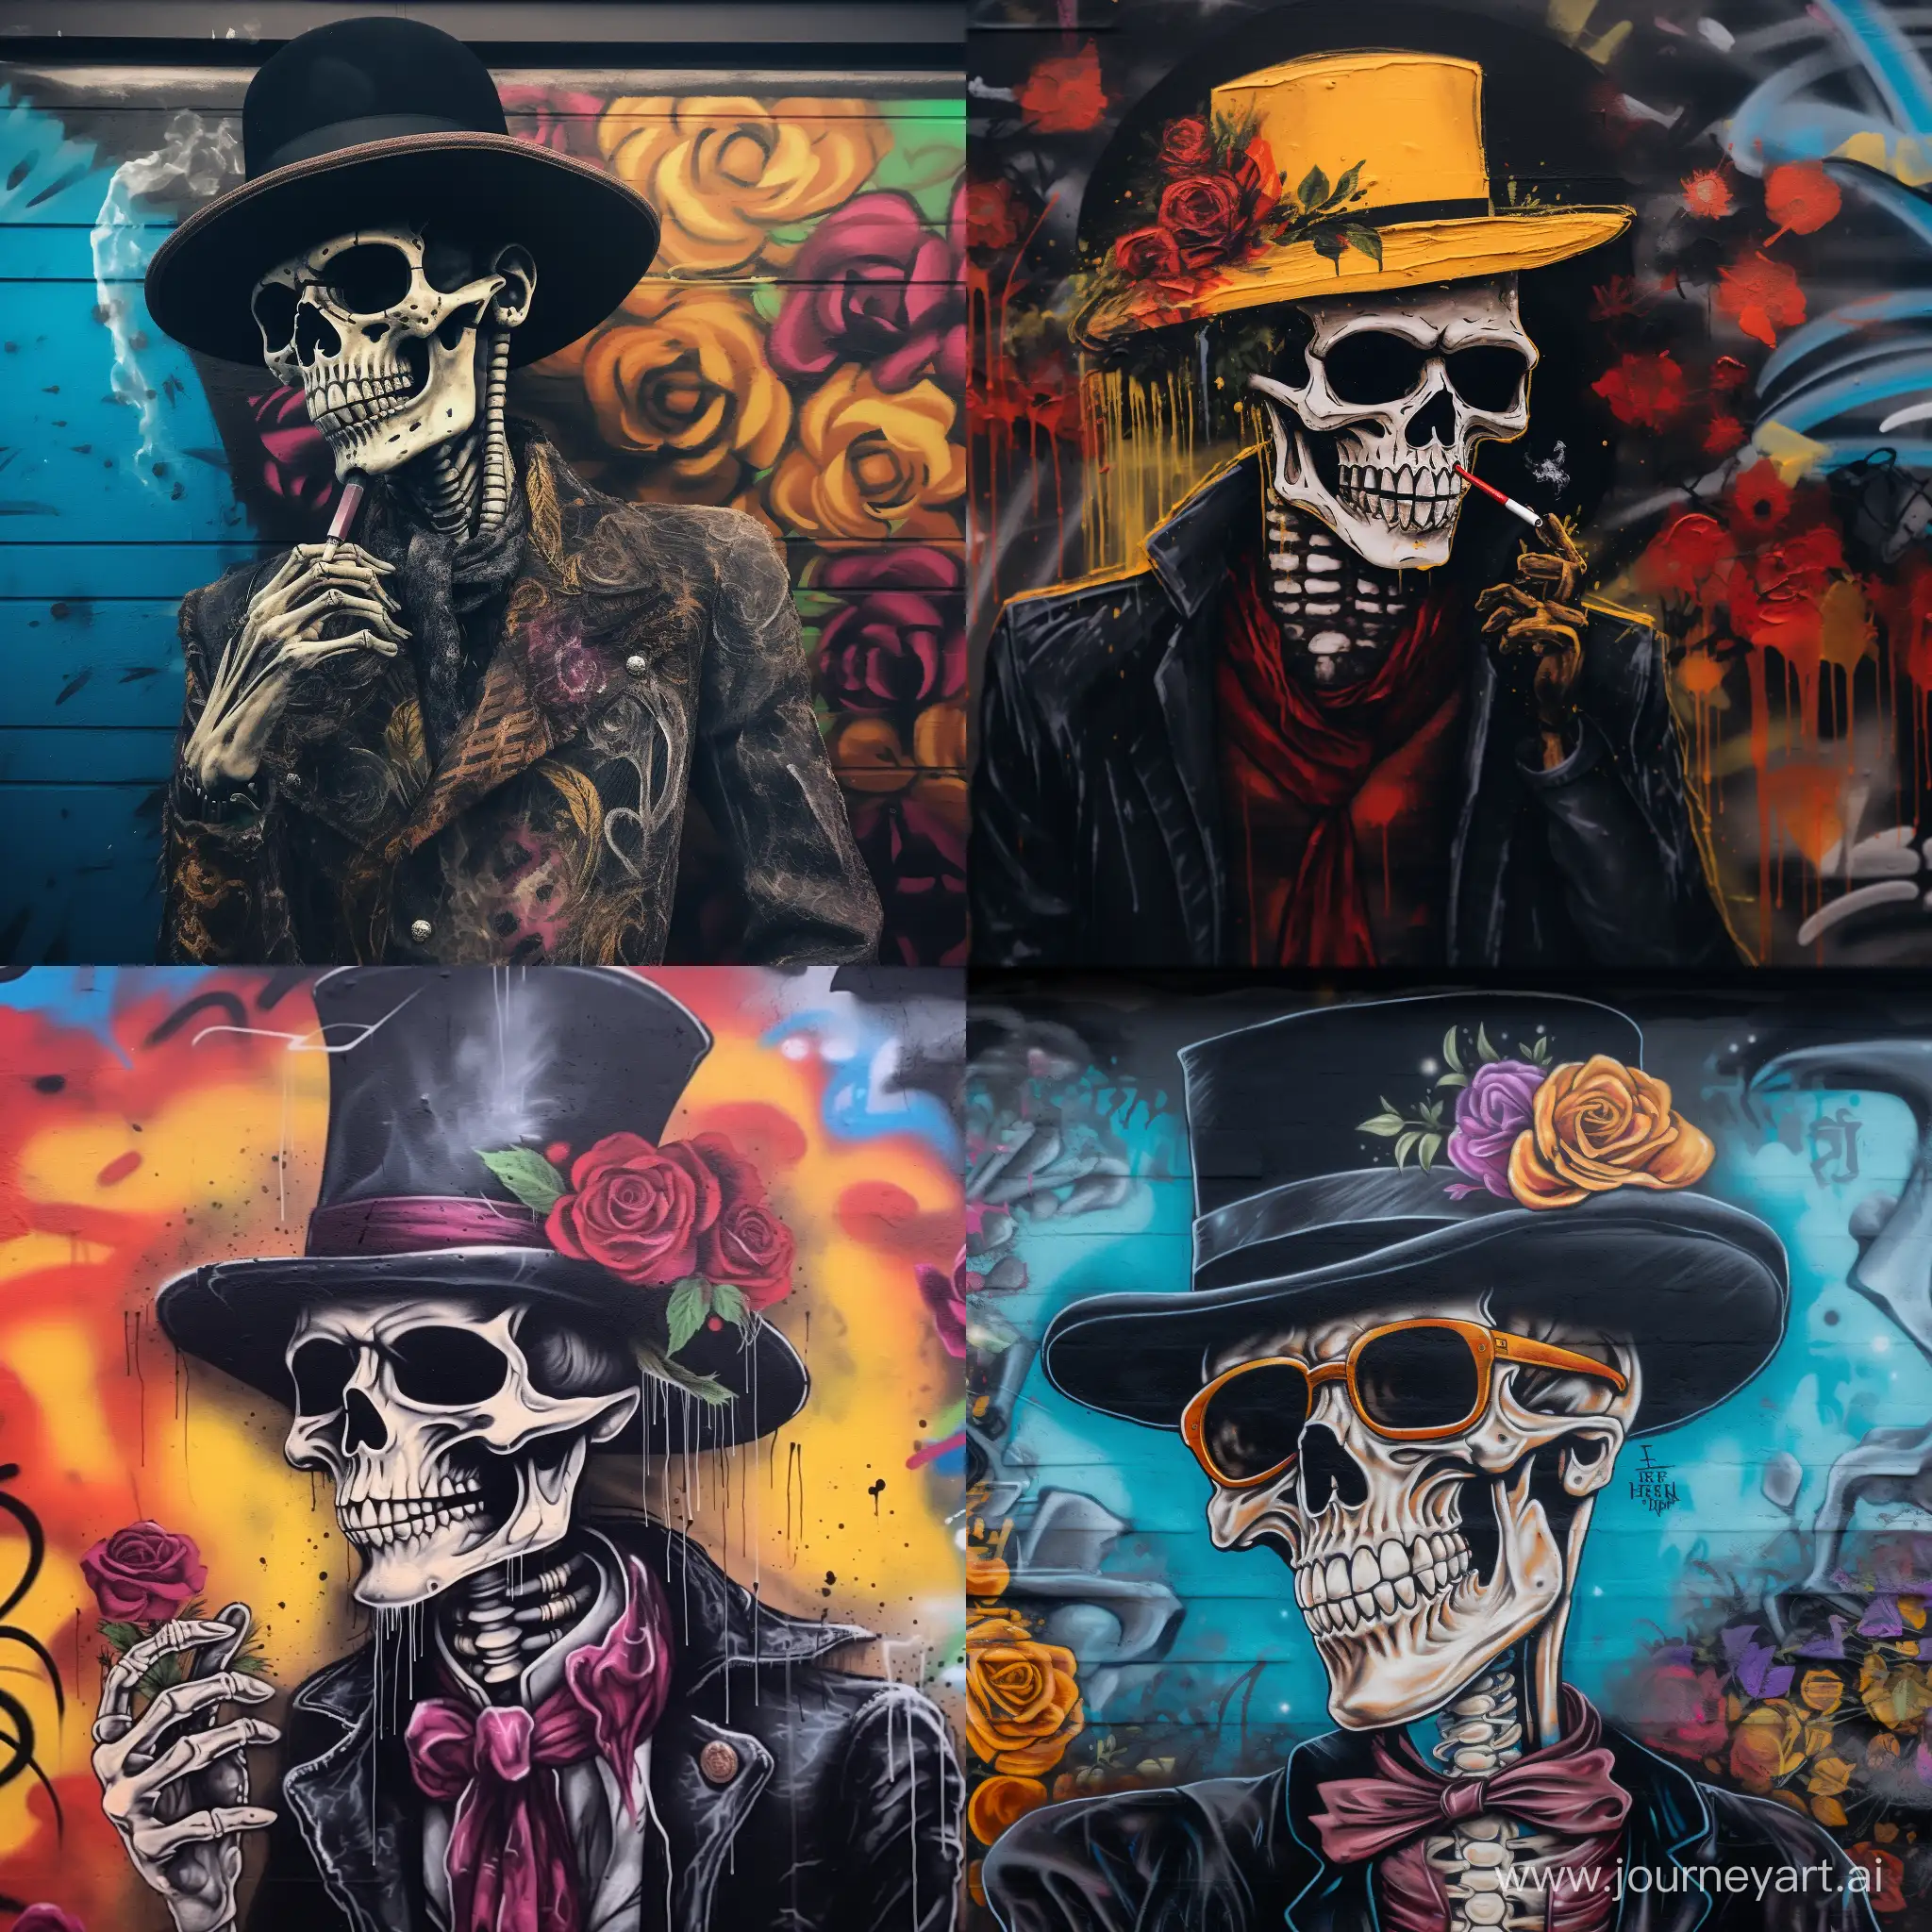 Zugaretten rauchendes skelett mit mütze 
im graffiti style
